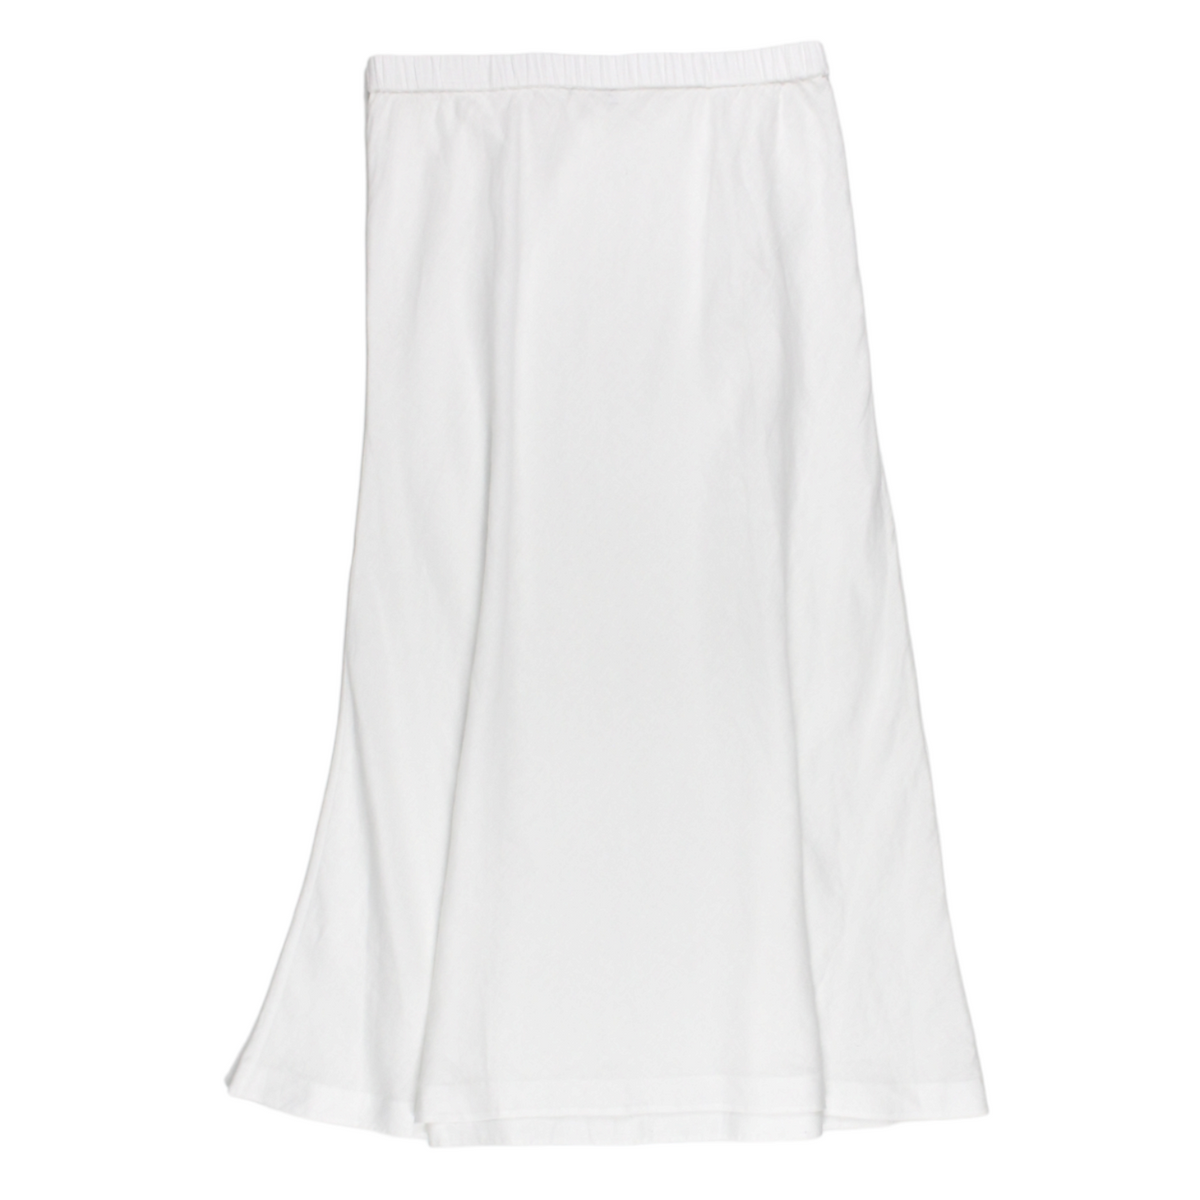 NRBY White Linen Skirt - Sample